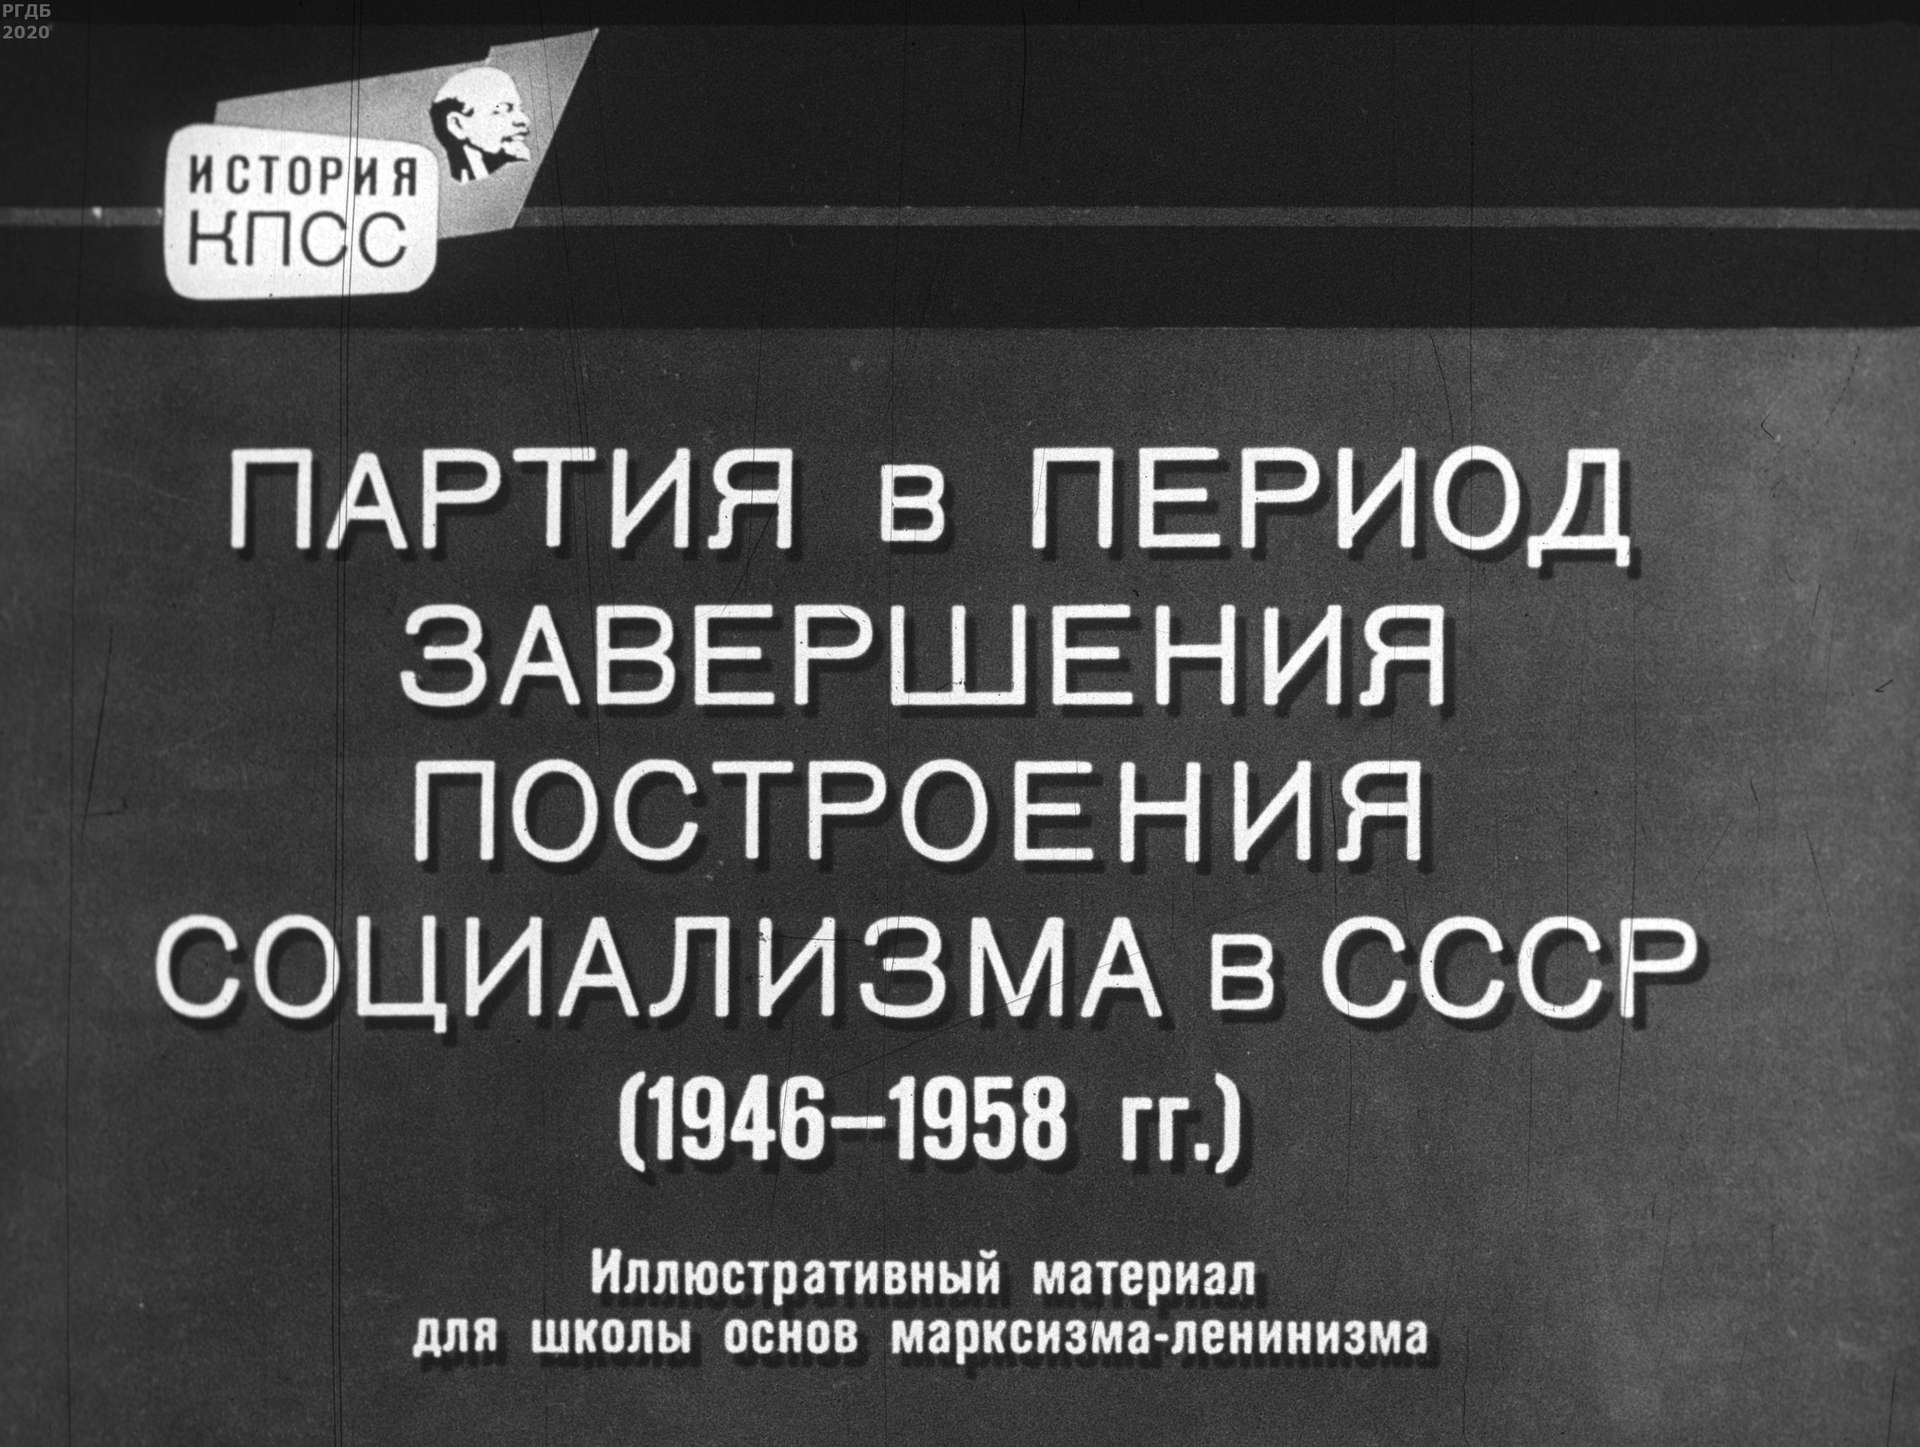 Партия в период завершения построения социализма в СССР (1946-1958 гг.)